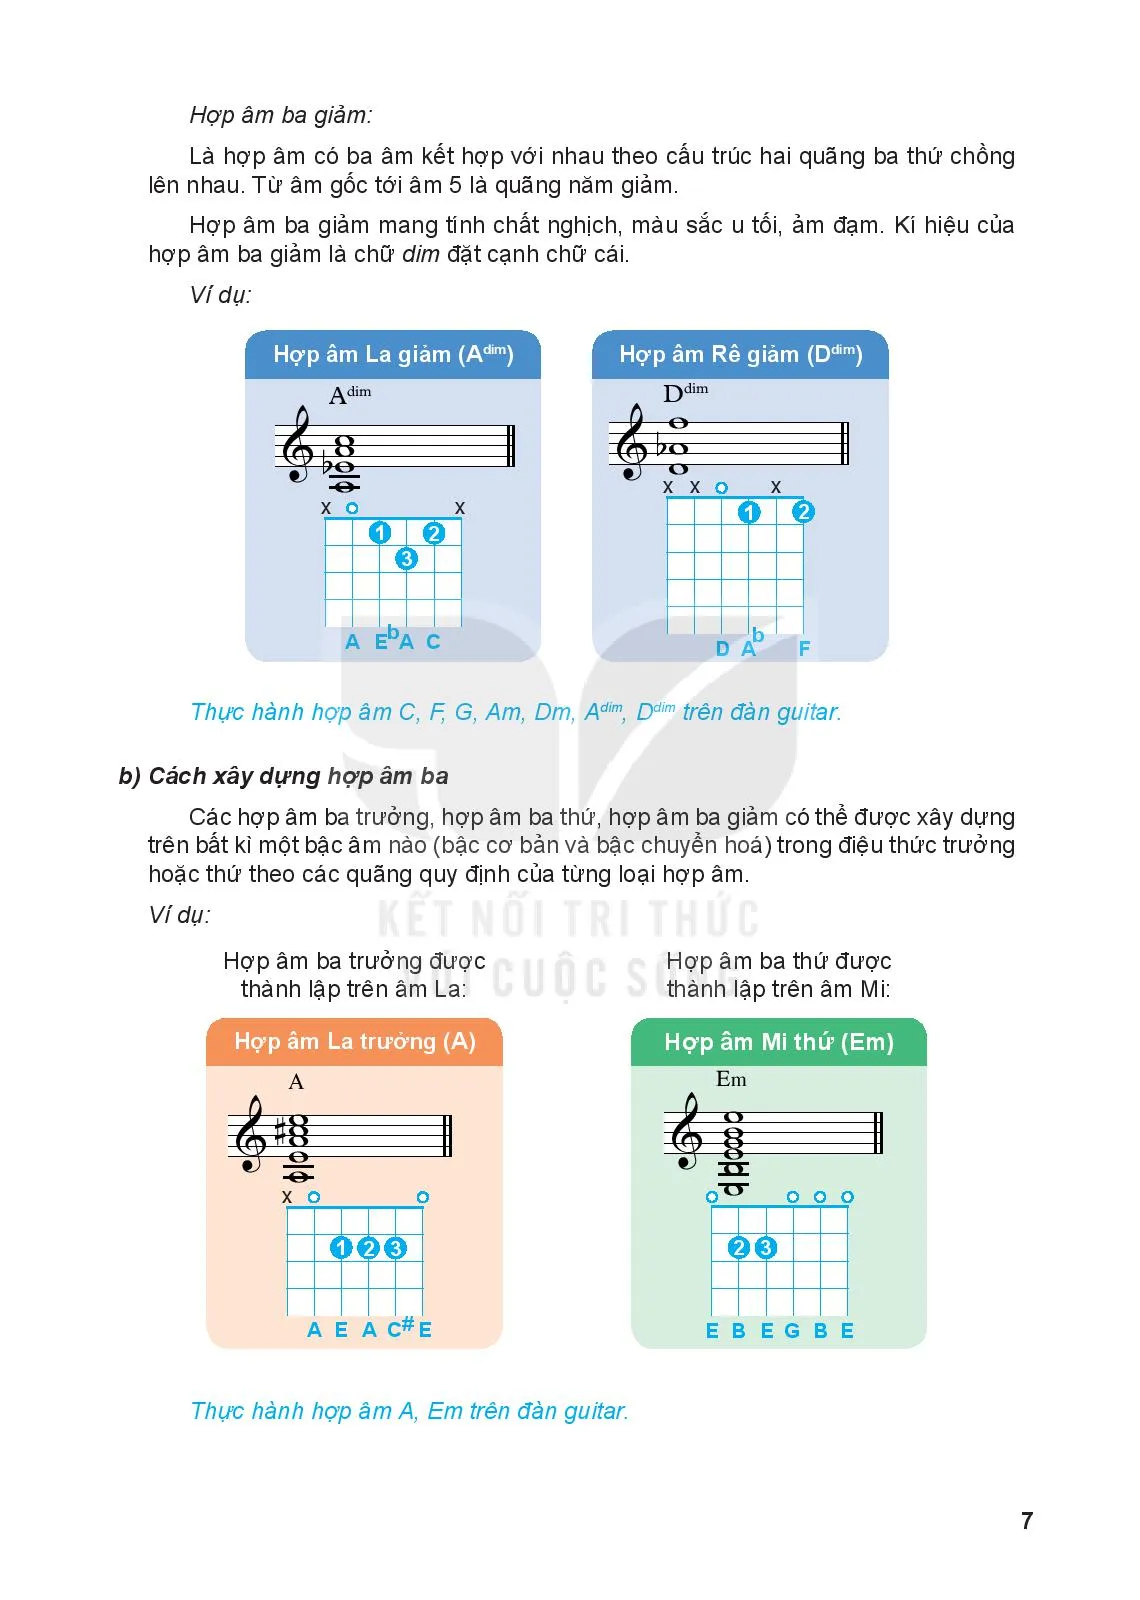 Bài 1: Hợp âm ba, các hợp âm ba chính trong điệu trưởng và điệu thứ